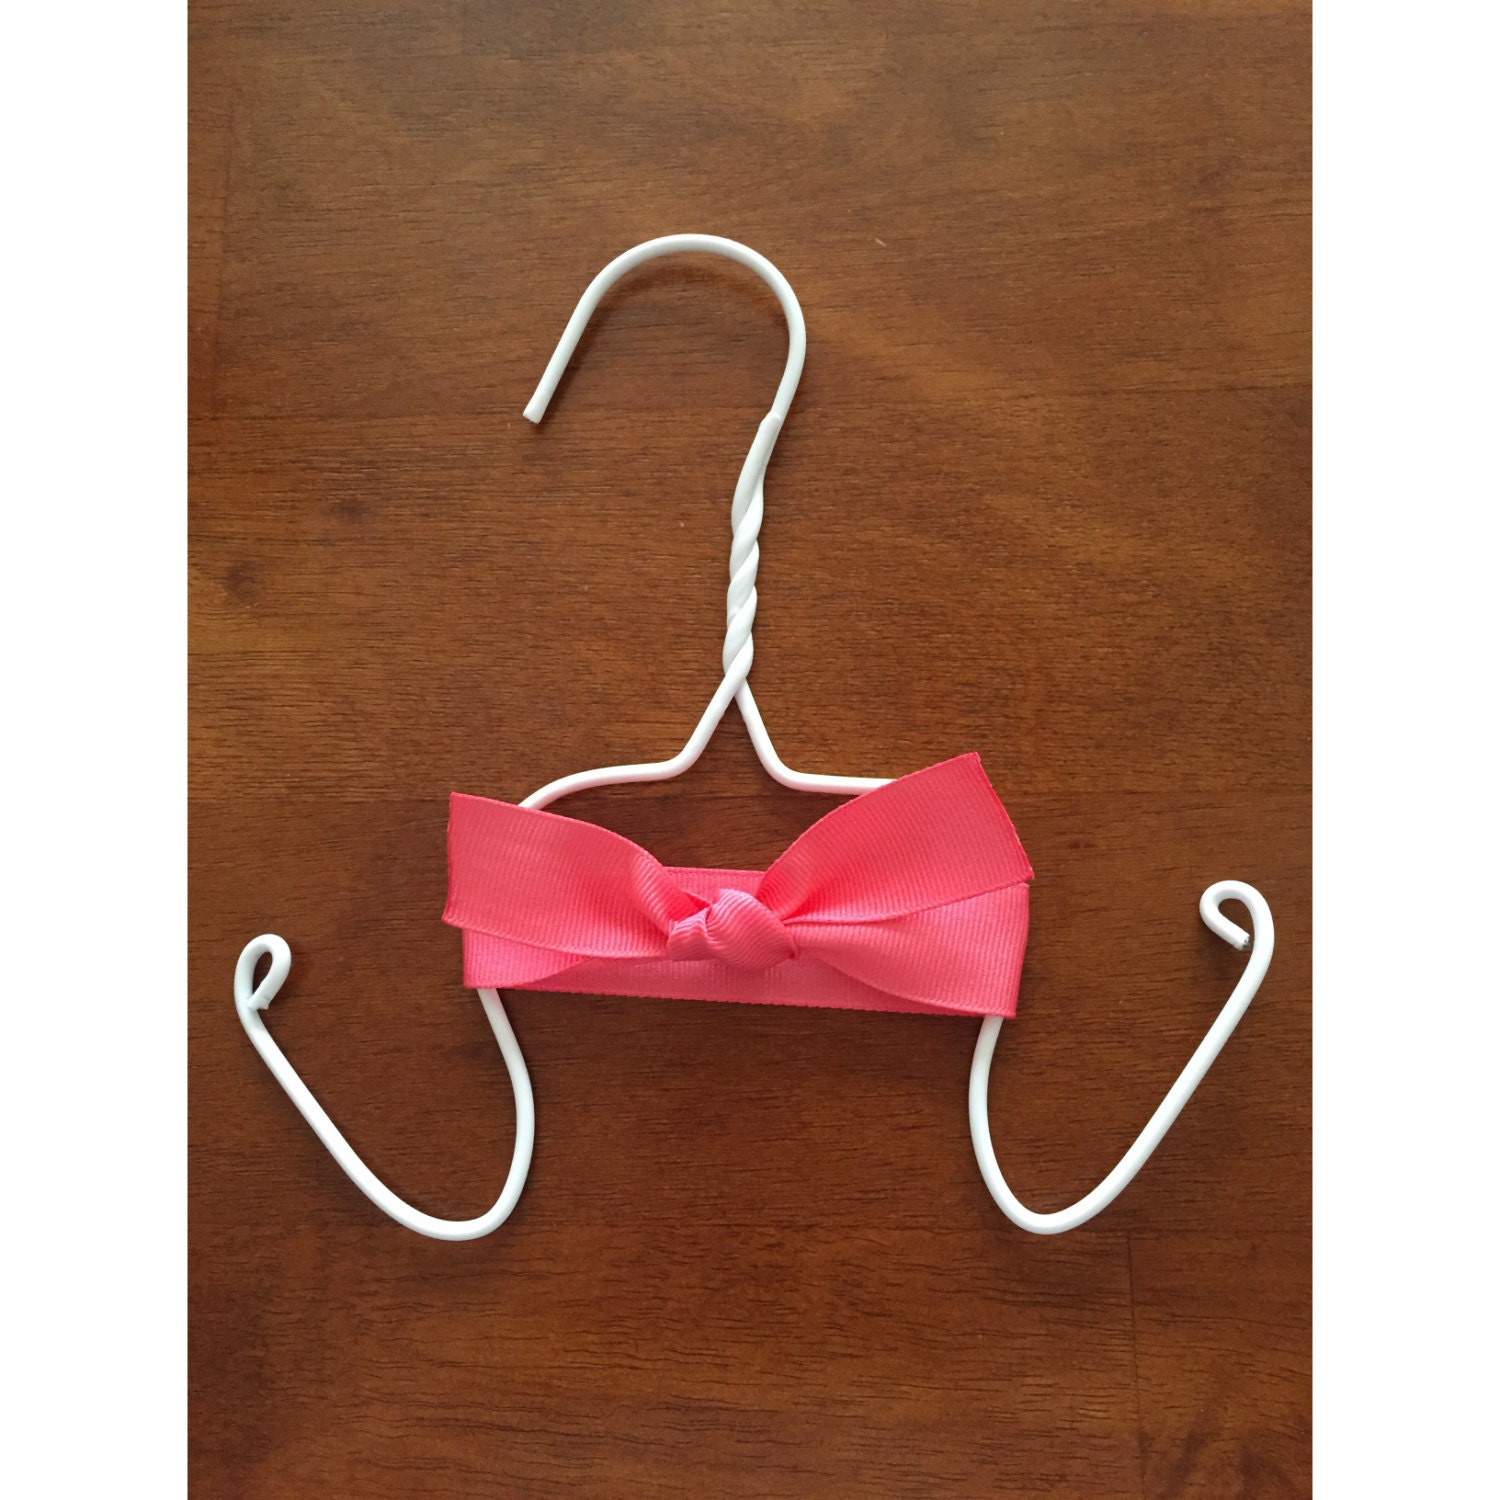  Sandal  Hanger  Flip Flop Hanger  Set of 3 Baby by MzMayCreations